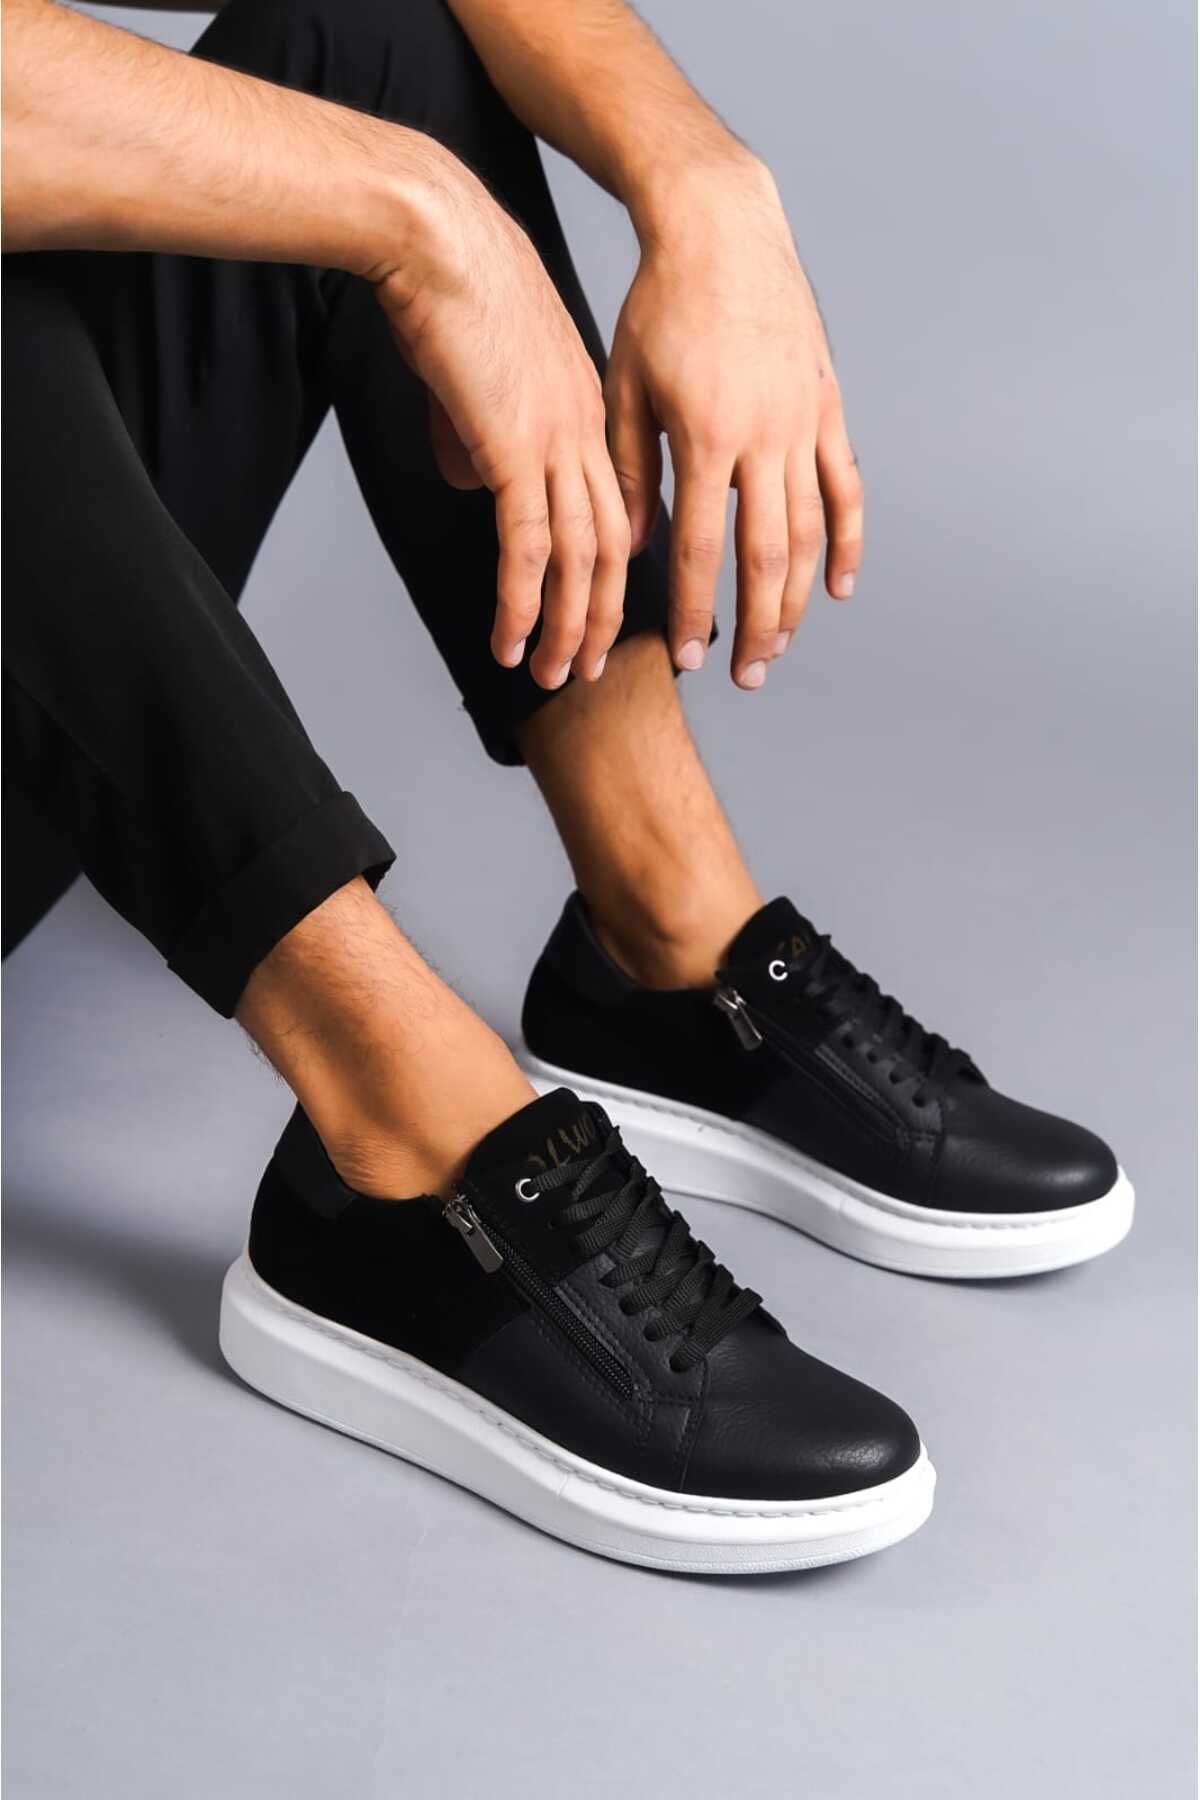 BZ Moda B155 BT Bağcıklı Fermuarlı Ortopedik Taban Süet Deyatlı Erkek Sneaker Günlük Ayakkabı Siyah